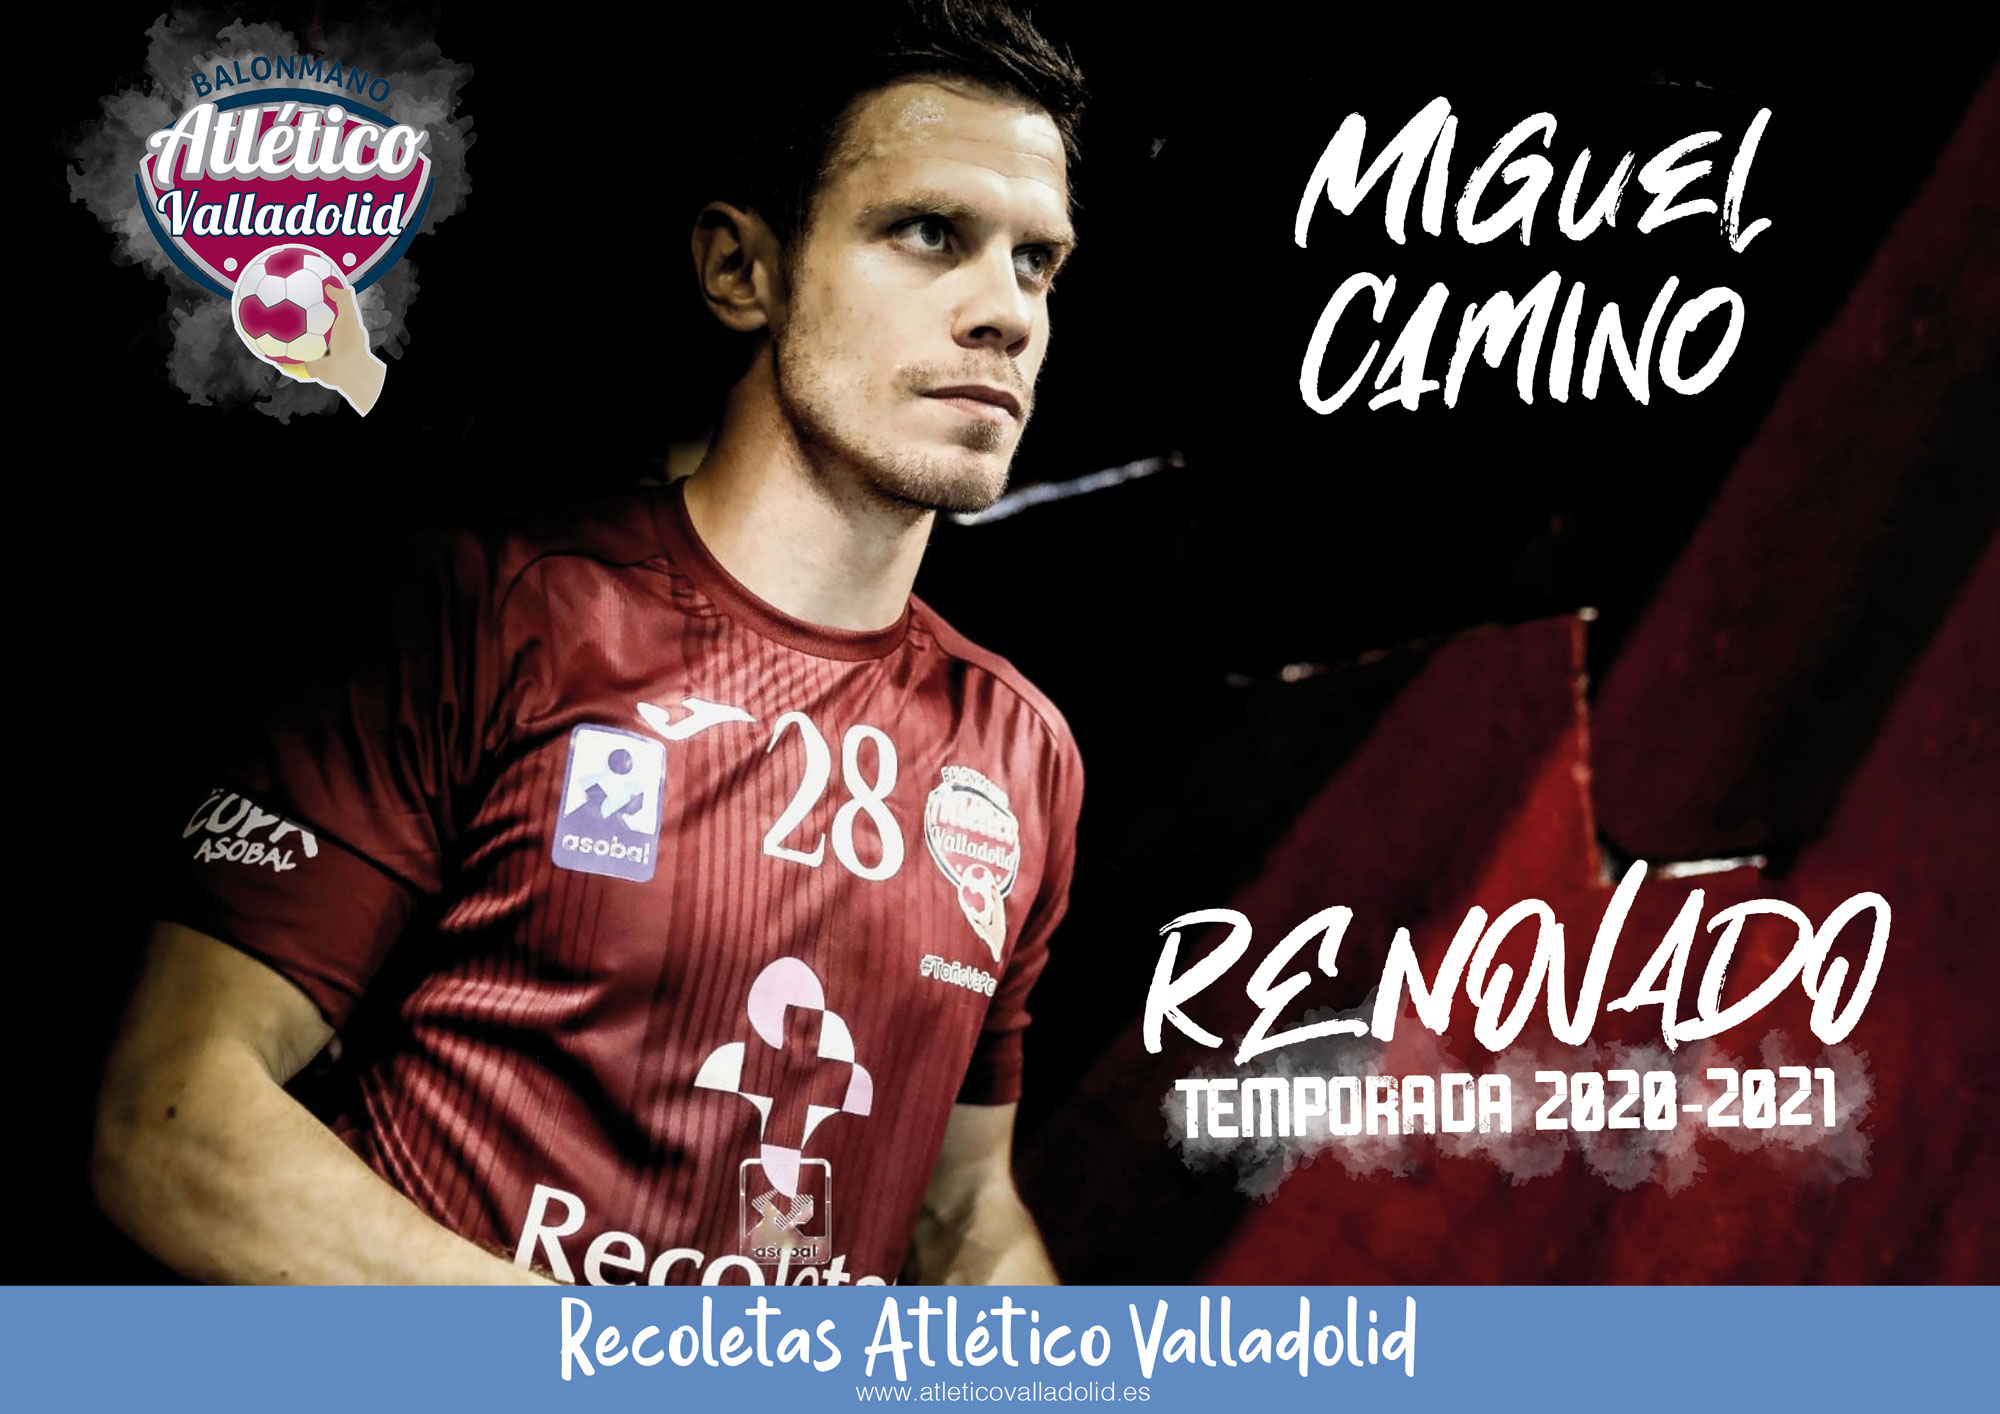 Miguel Camino continuará en el Recoletas Atlético Valladolid la próxima temporada